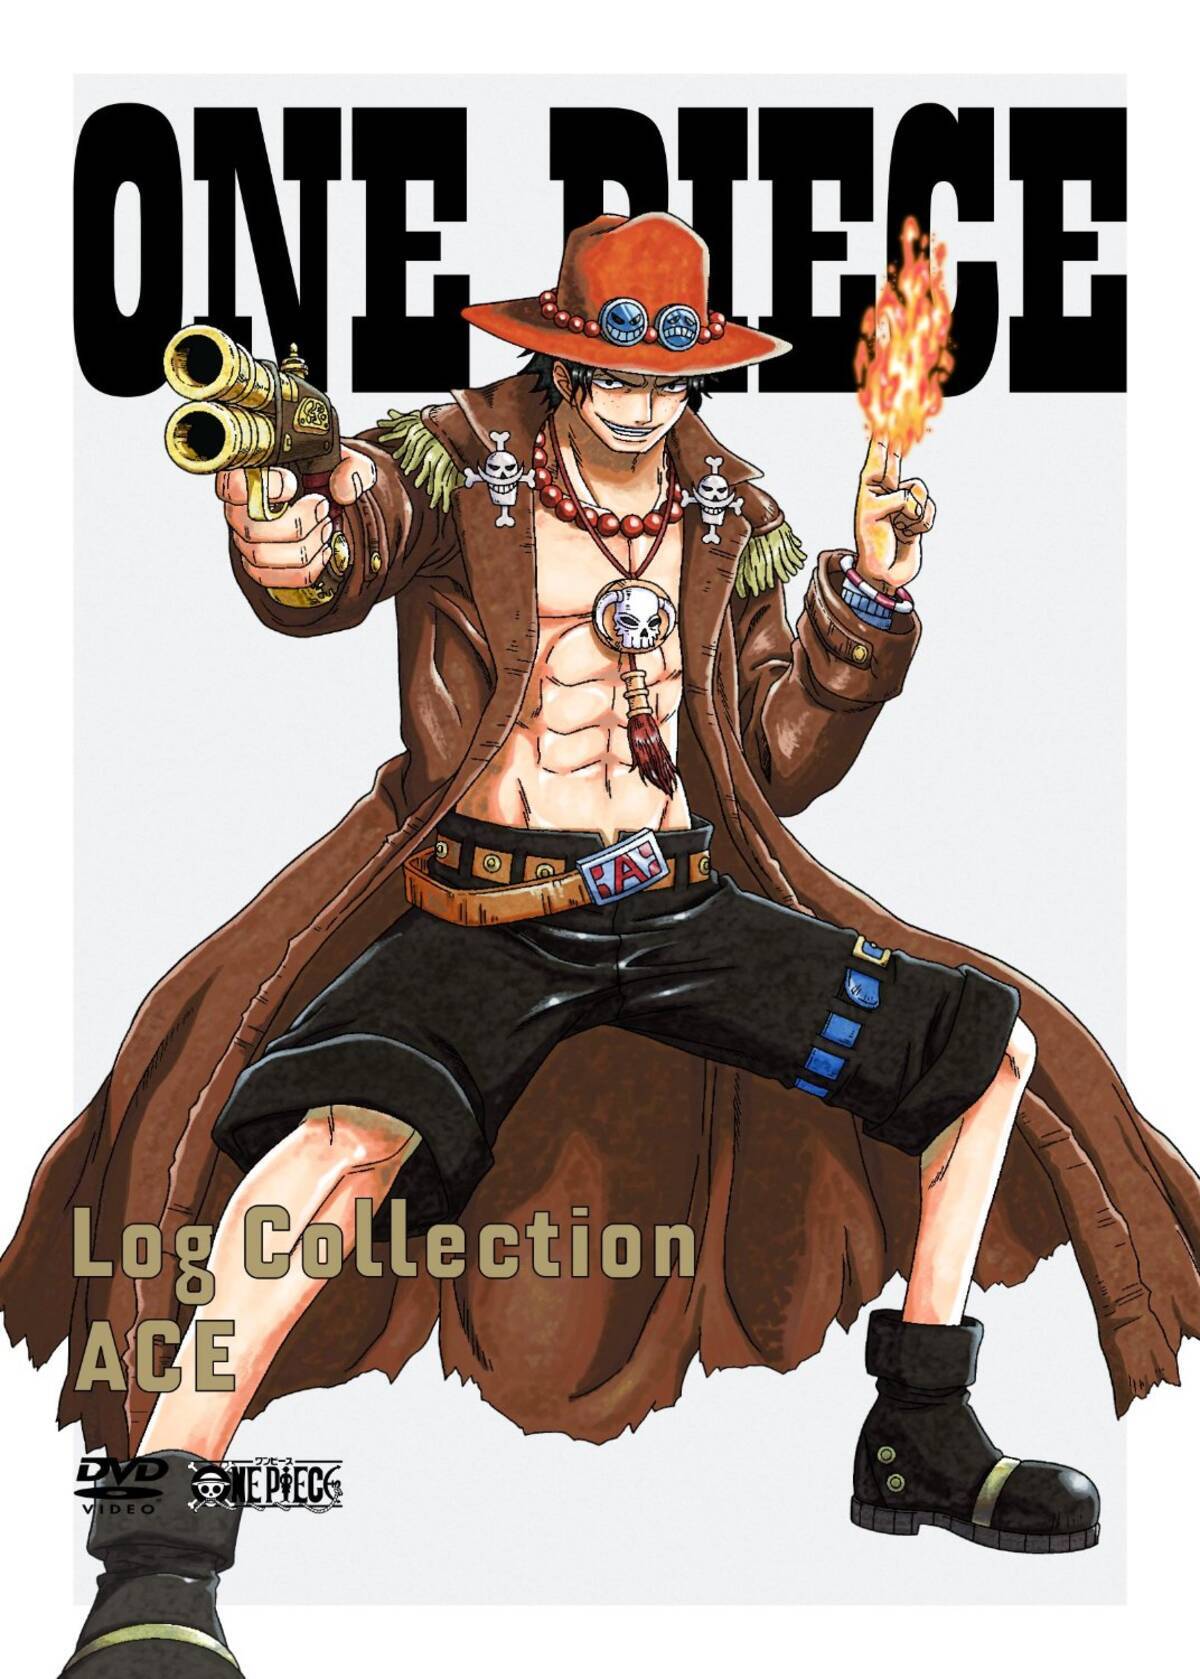 アニメキャラの魅力 愛してくれてありがとう ファンの心の中に生き続ける ポートガス D エース の魅力とは One Piece 14年12月日 エキサイトニュース 2 2